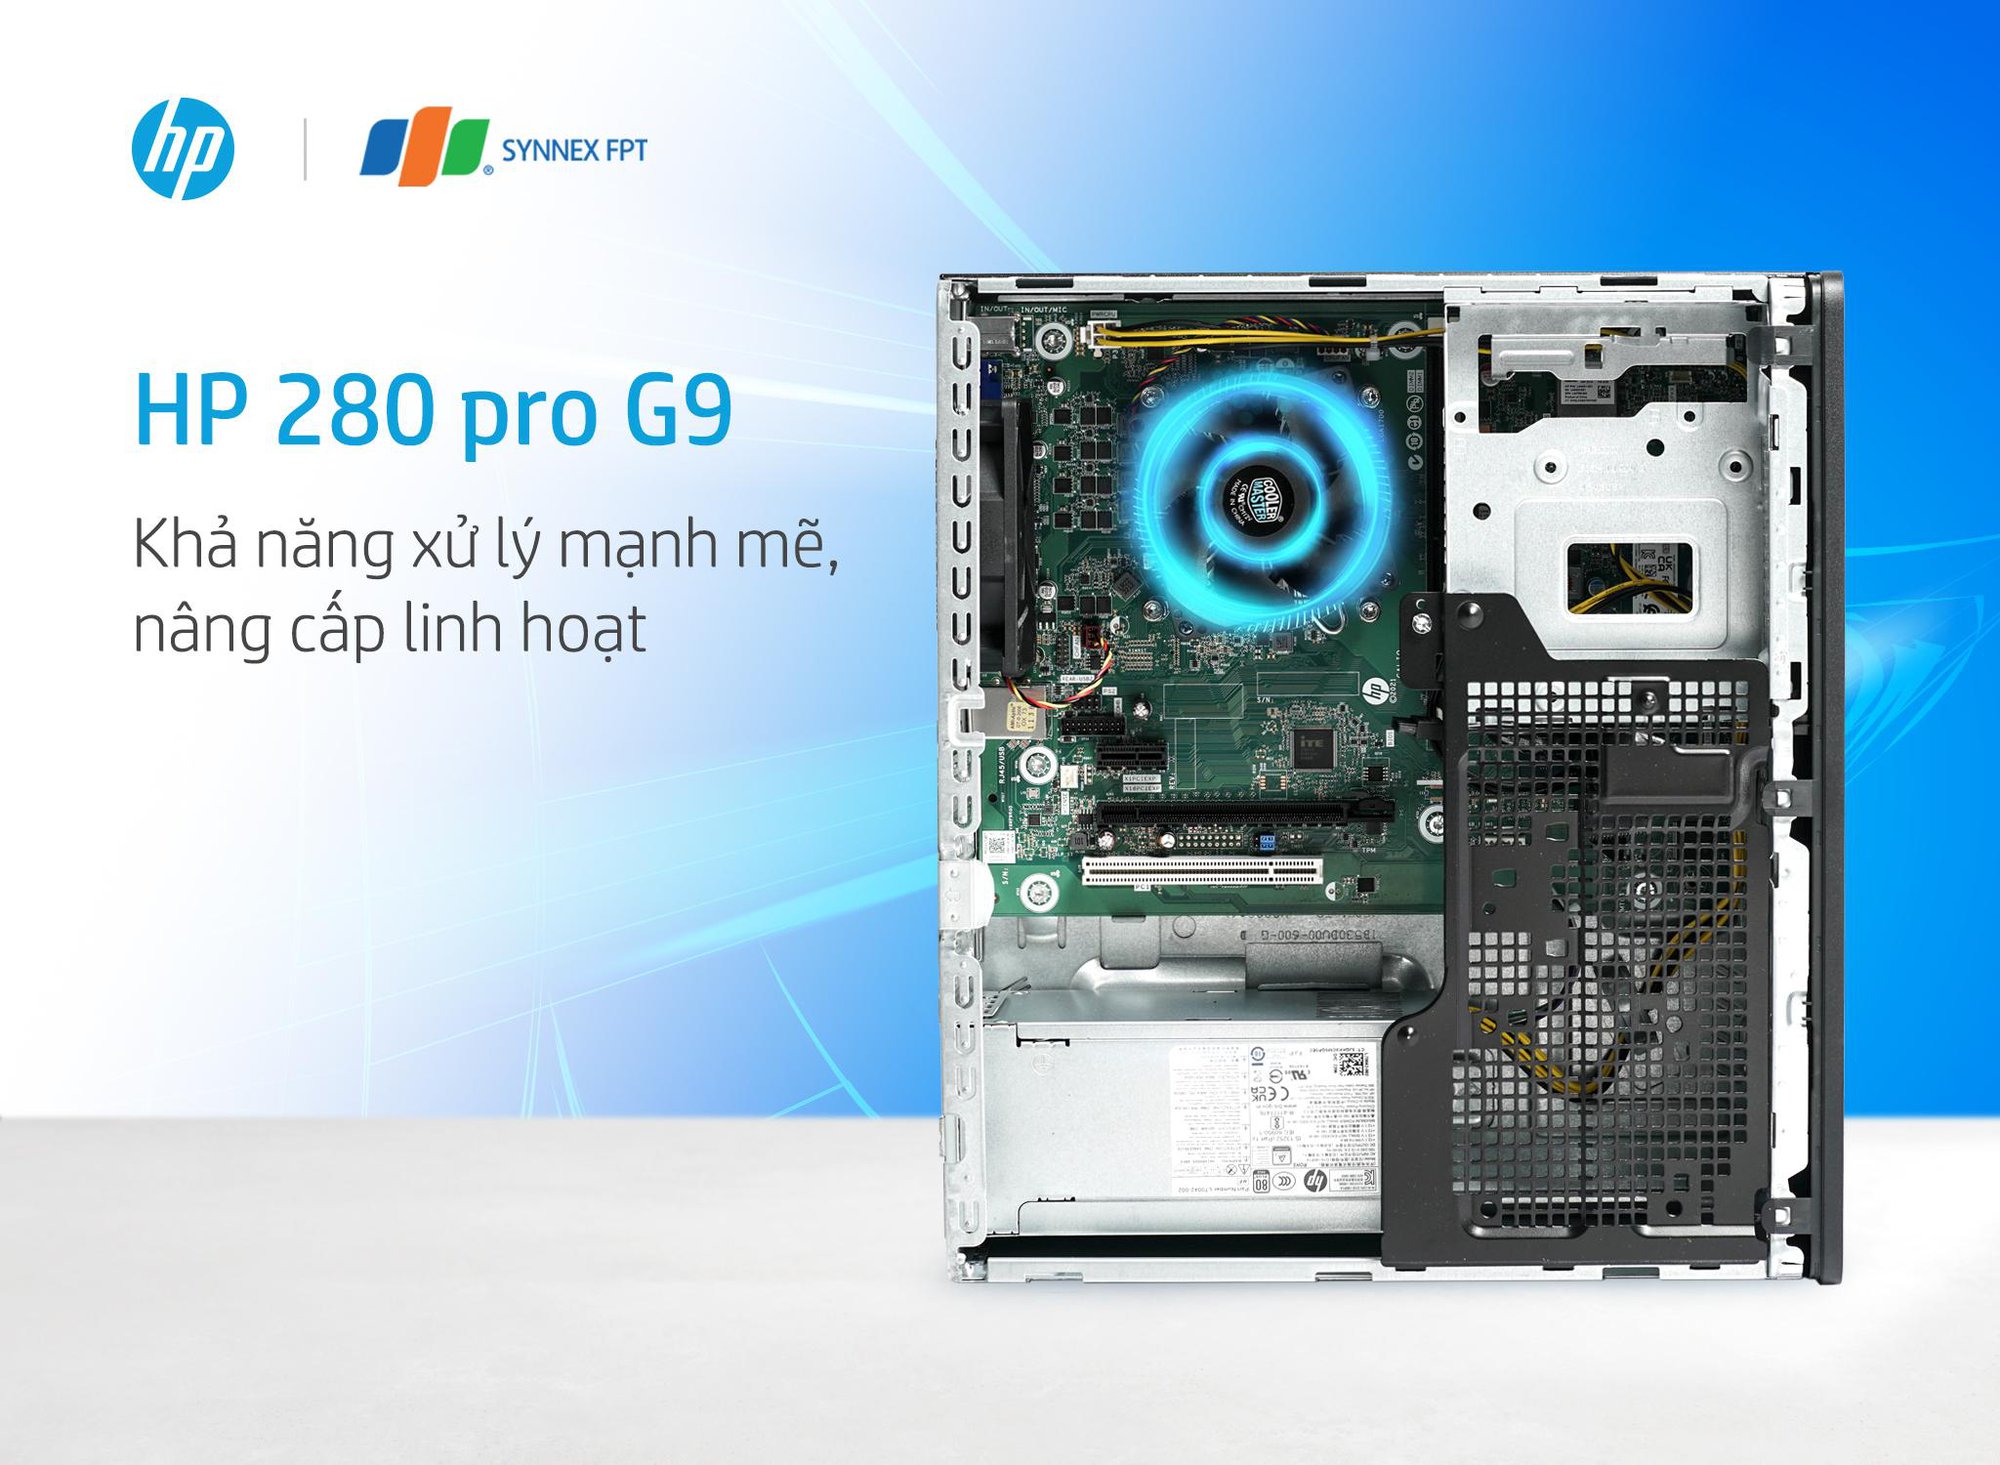 Trải nghiệm HP Pro Tower 280 G9 PCI – Máy tính bàn nâng cấp hoàn thiện - Ảnh 1.